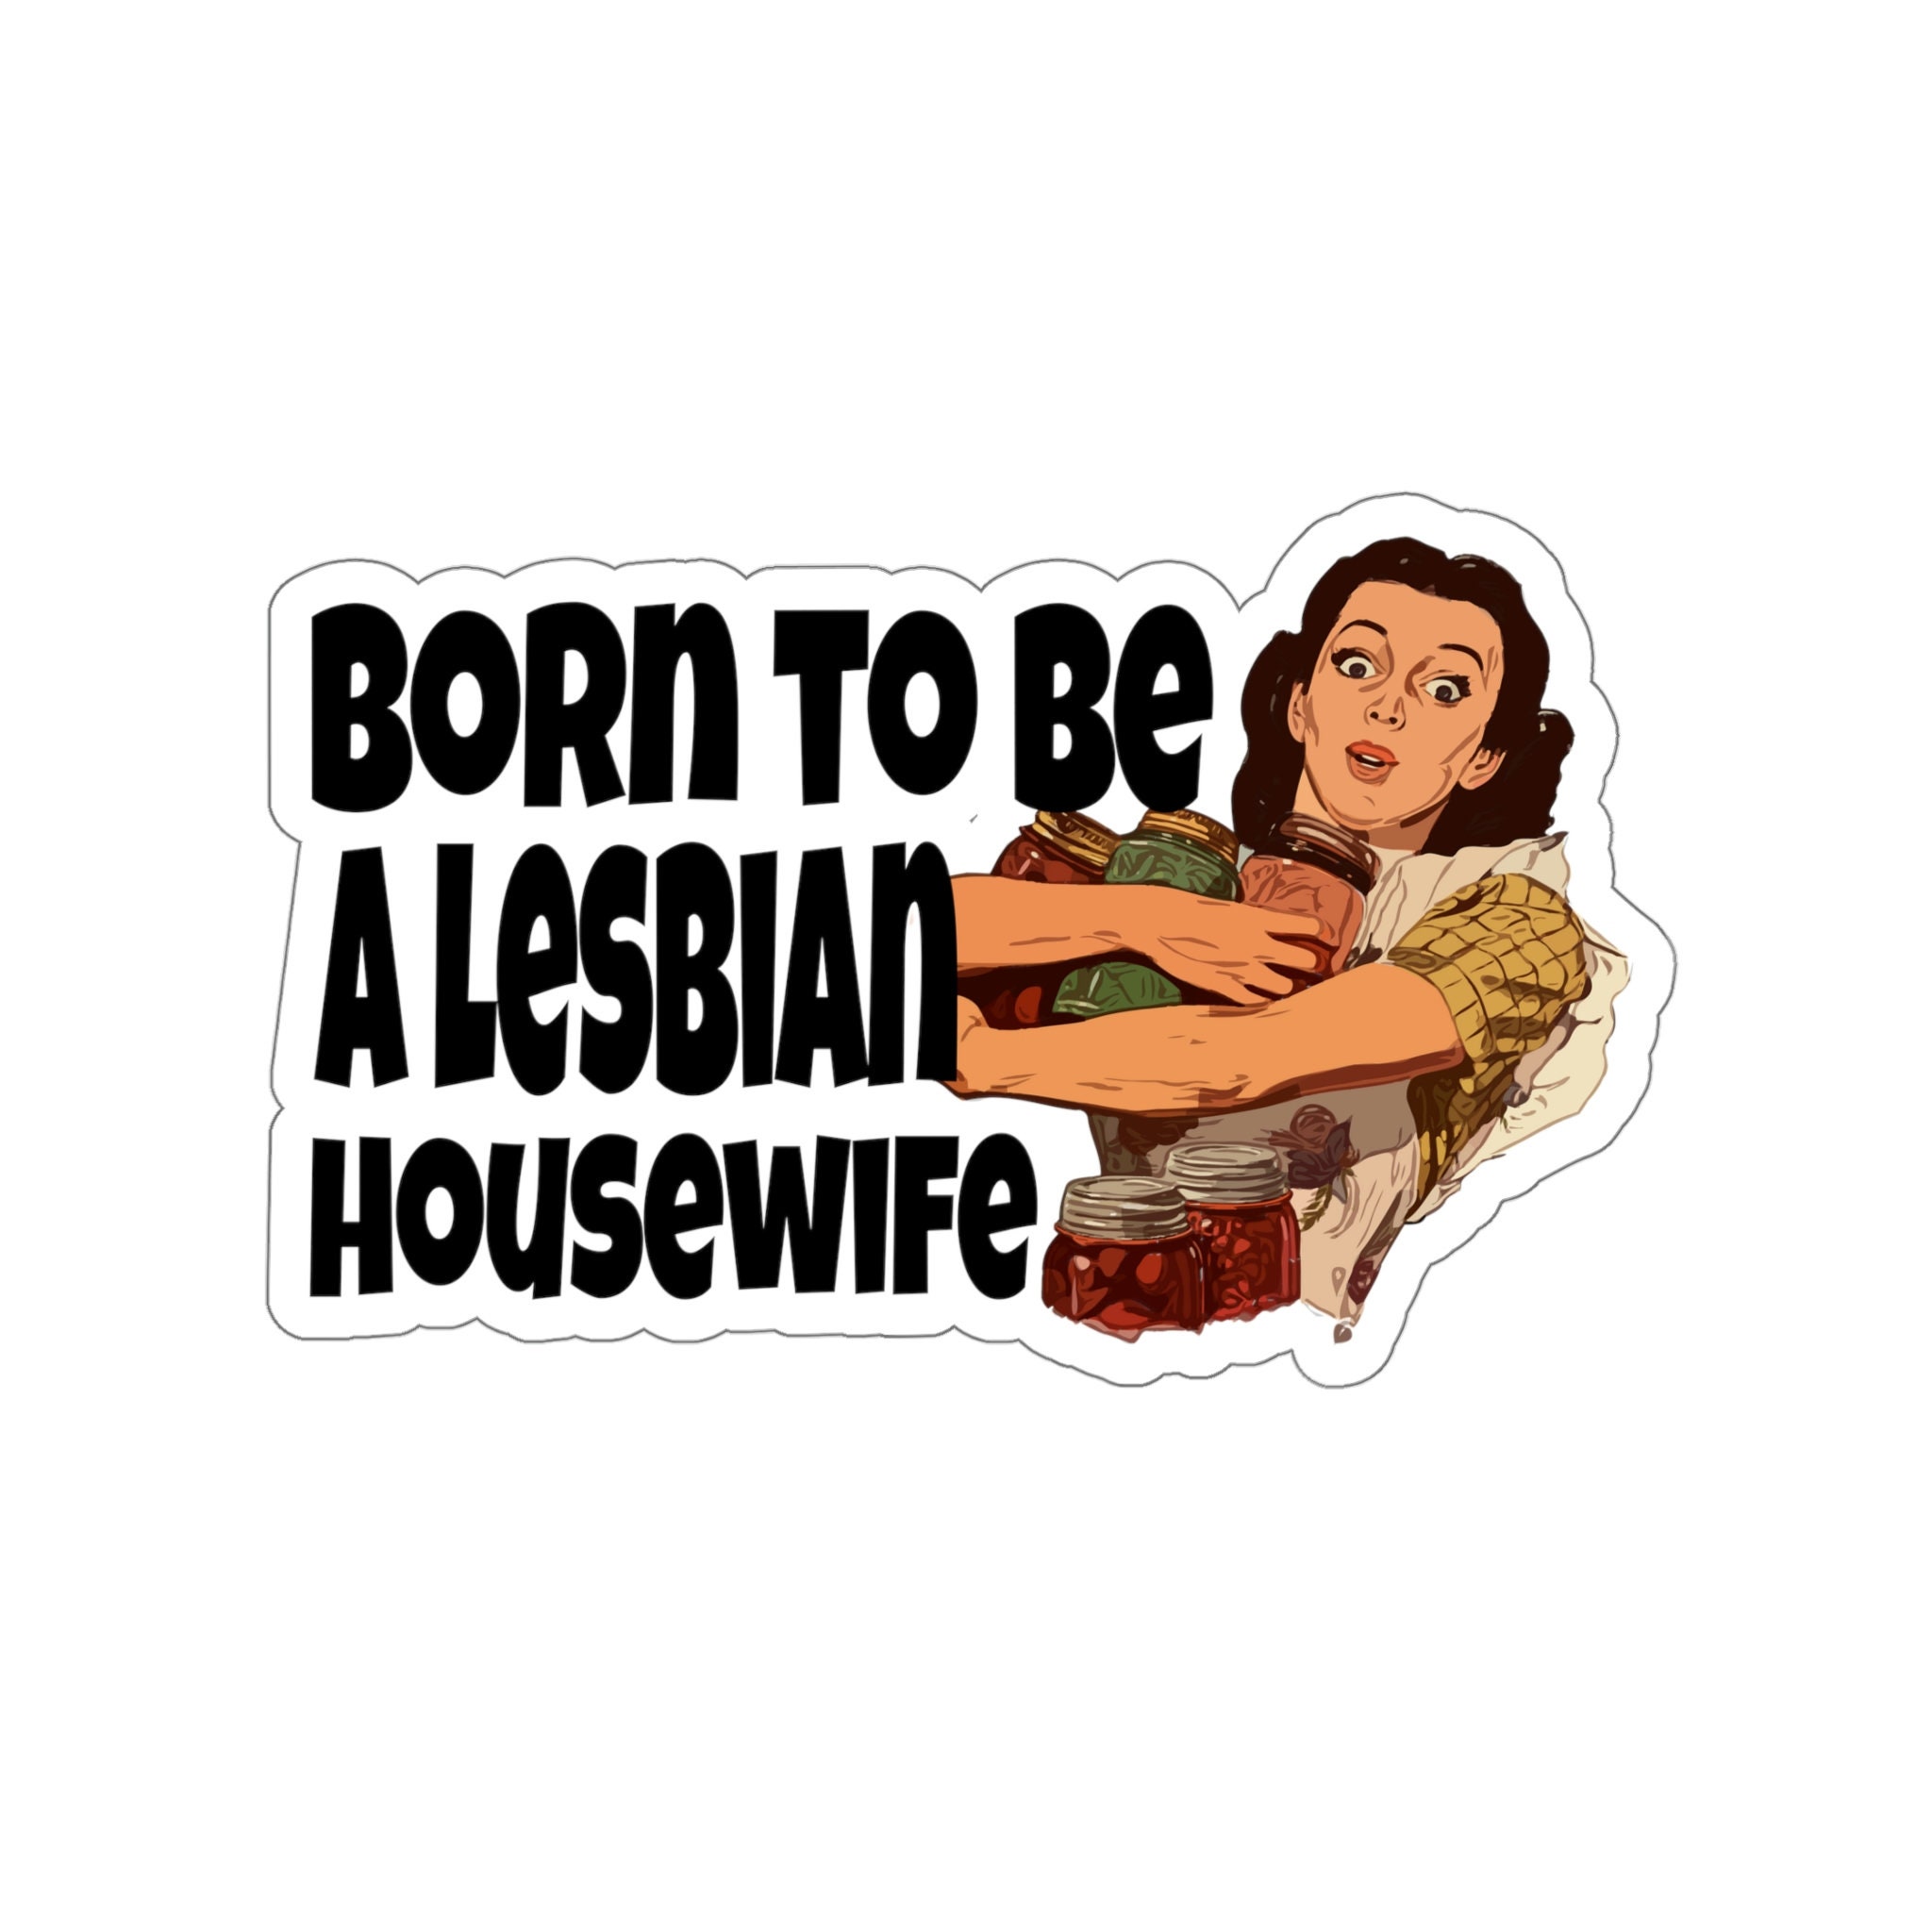 lesbian housewife books rm bali Porn Photos